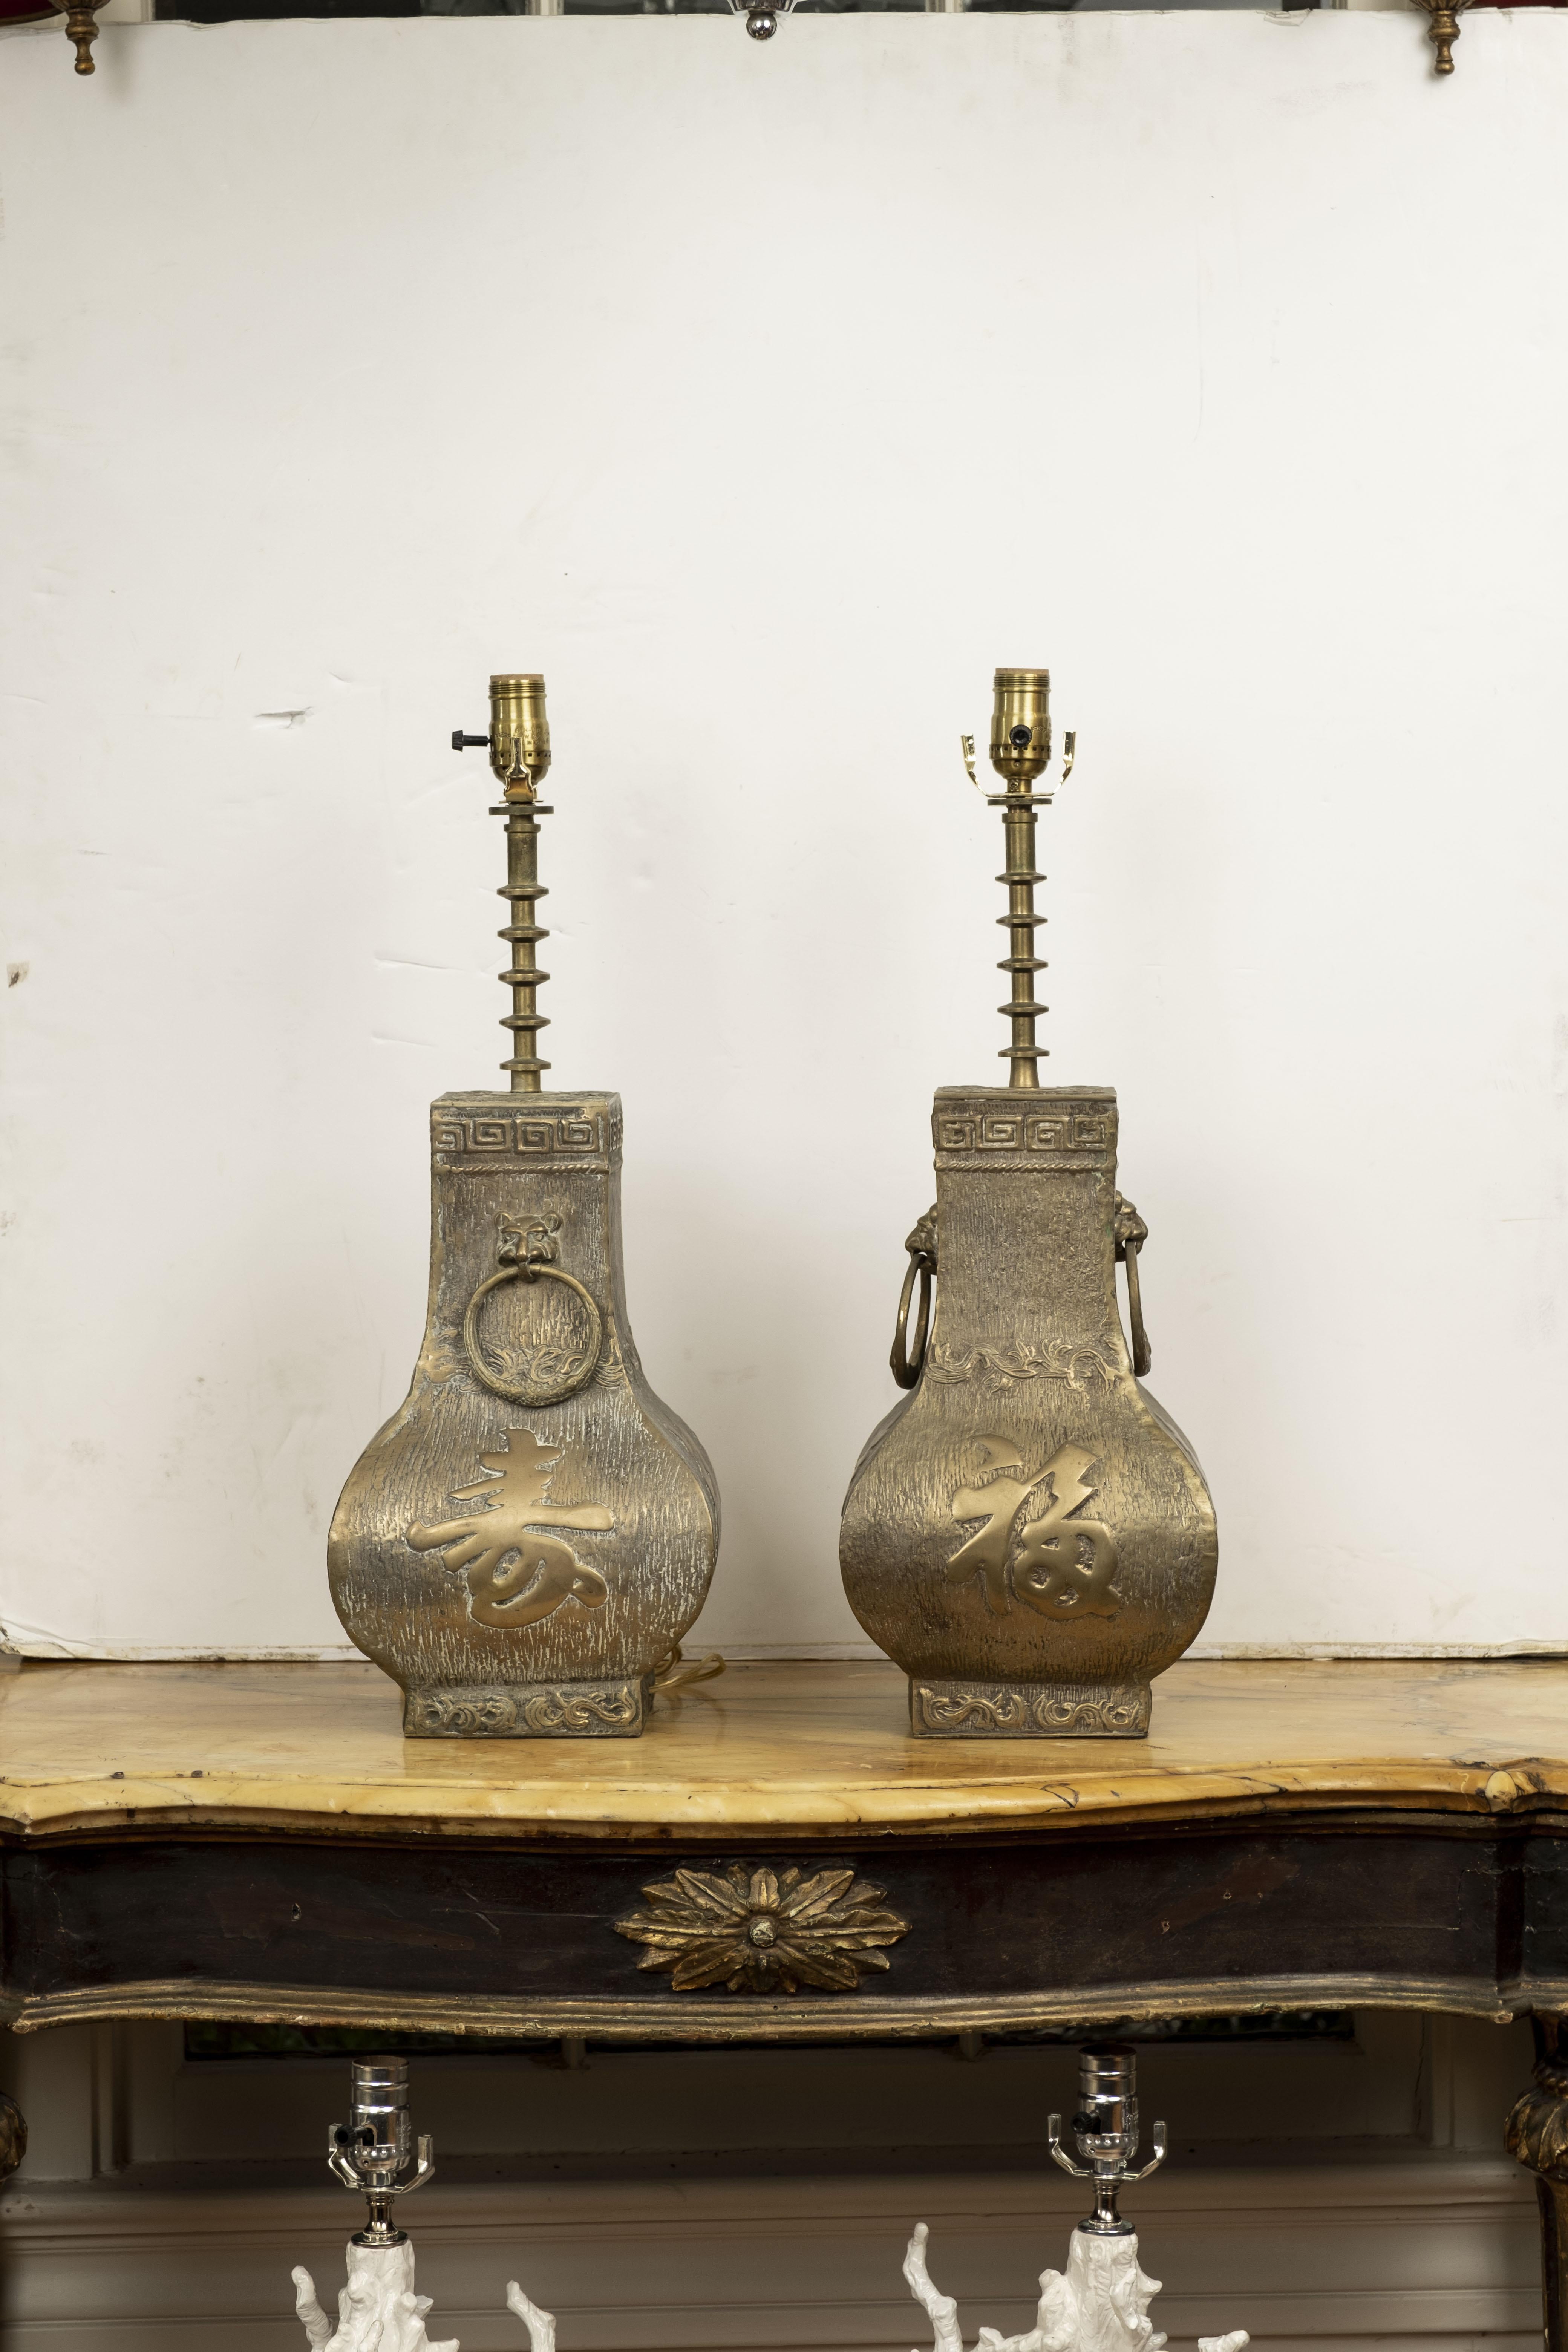 Ein Paar moderne asiatische Messinglampen von James Mont. Diese atemberaubenden, schwergewichtigen Hollywood-Regency-Messinglampen weisen chinesische Schriftzeichen, griechische Schlüssel und Löwenkopfgriffe auf. Dieses großartige Paar Messinglampen